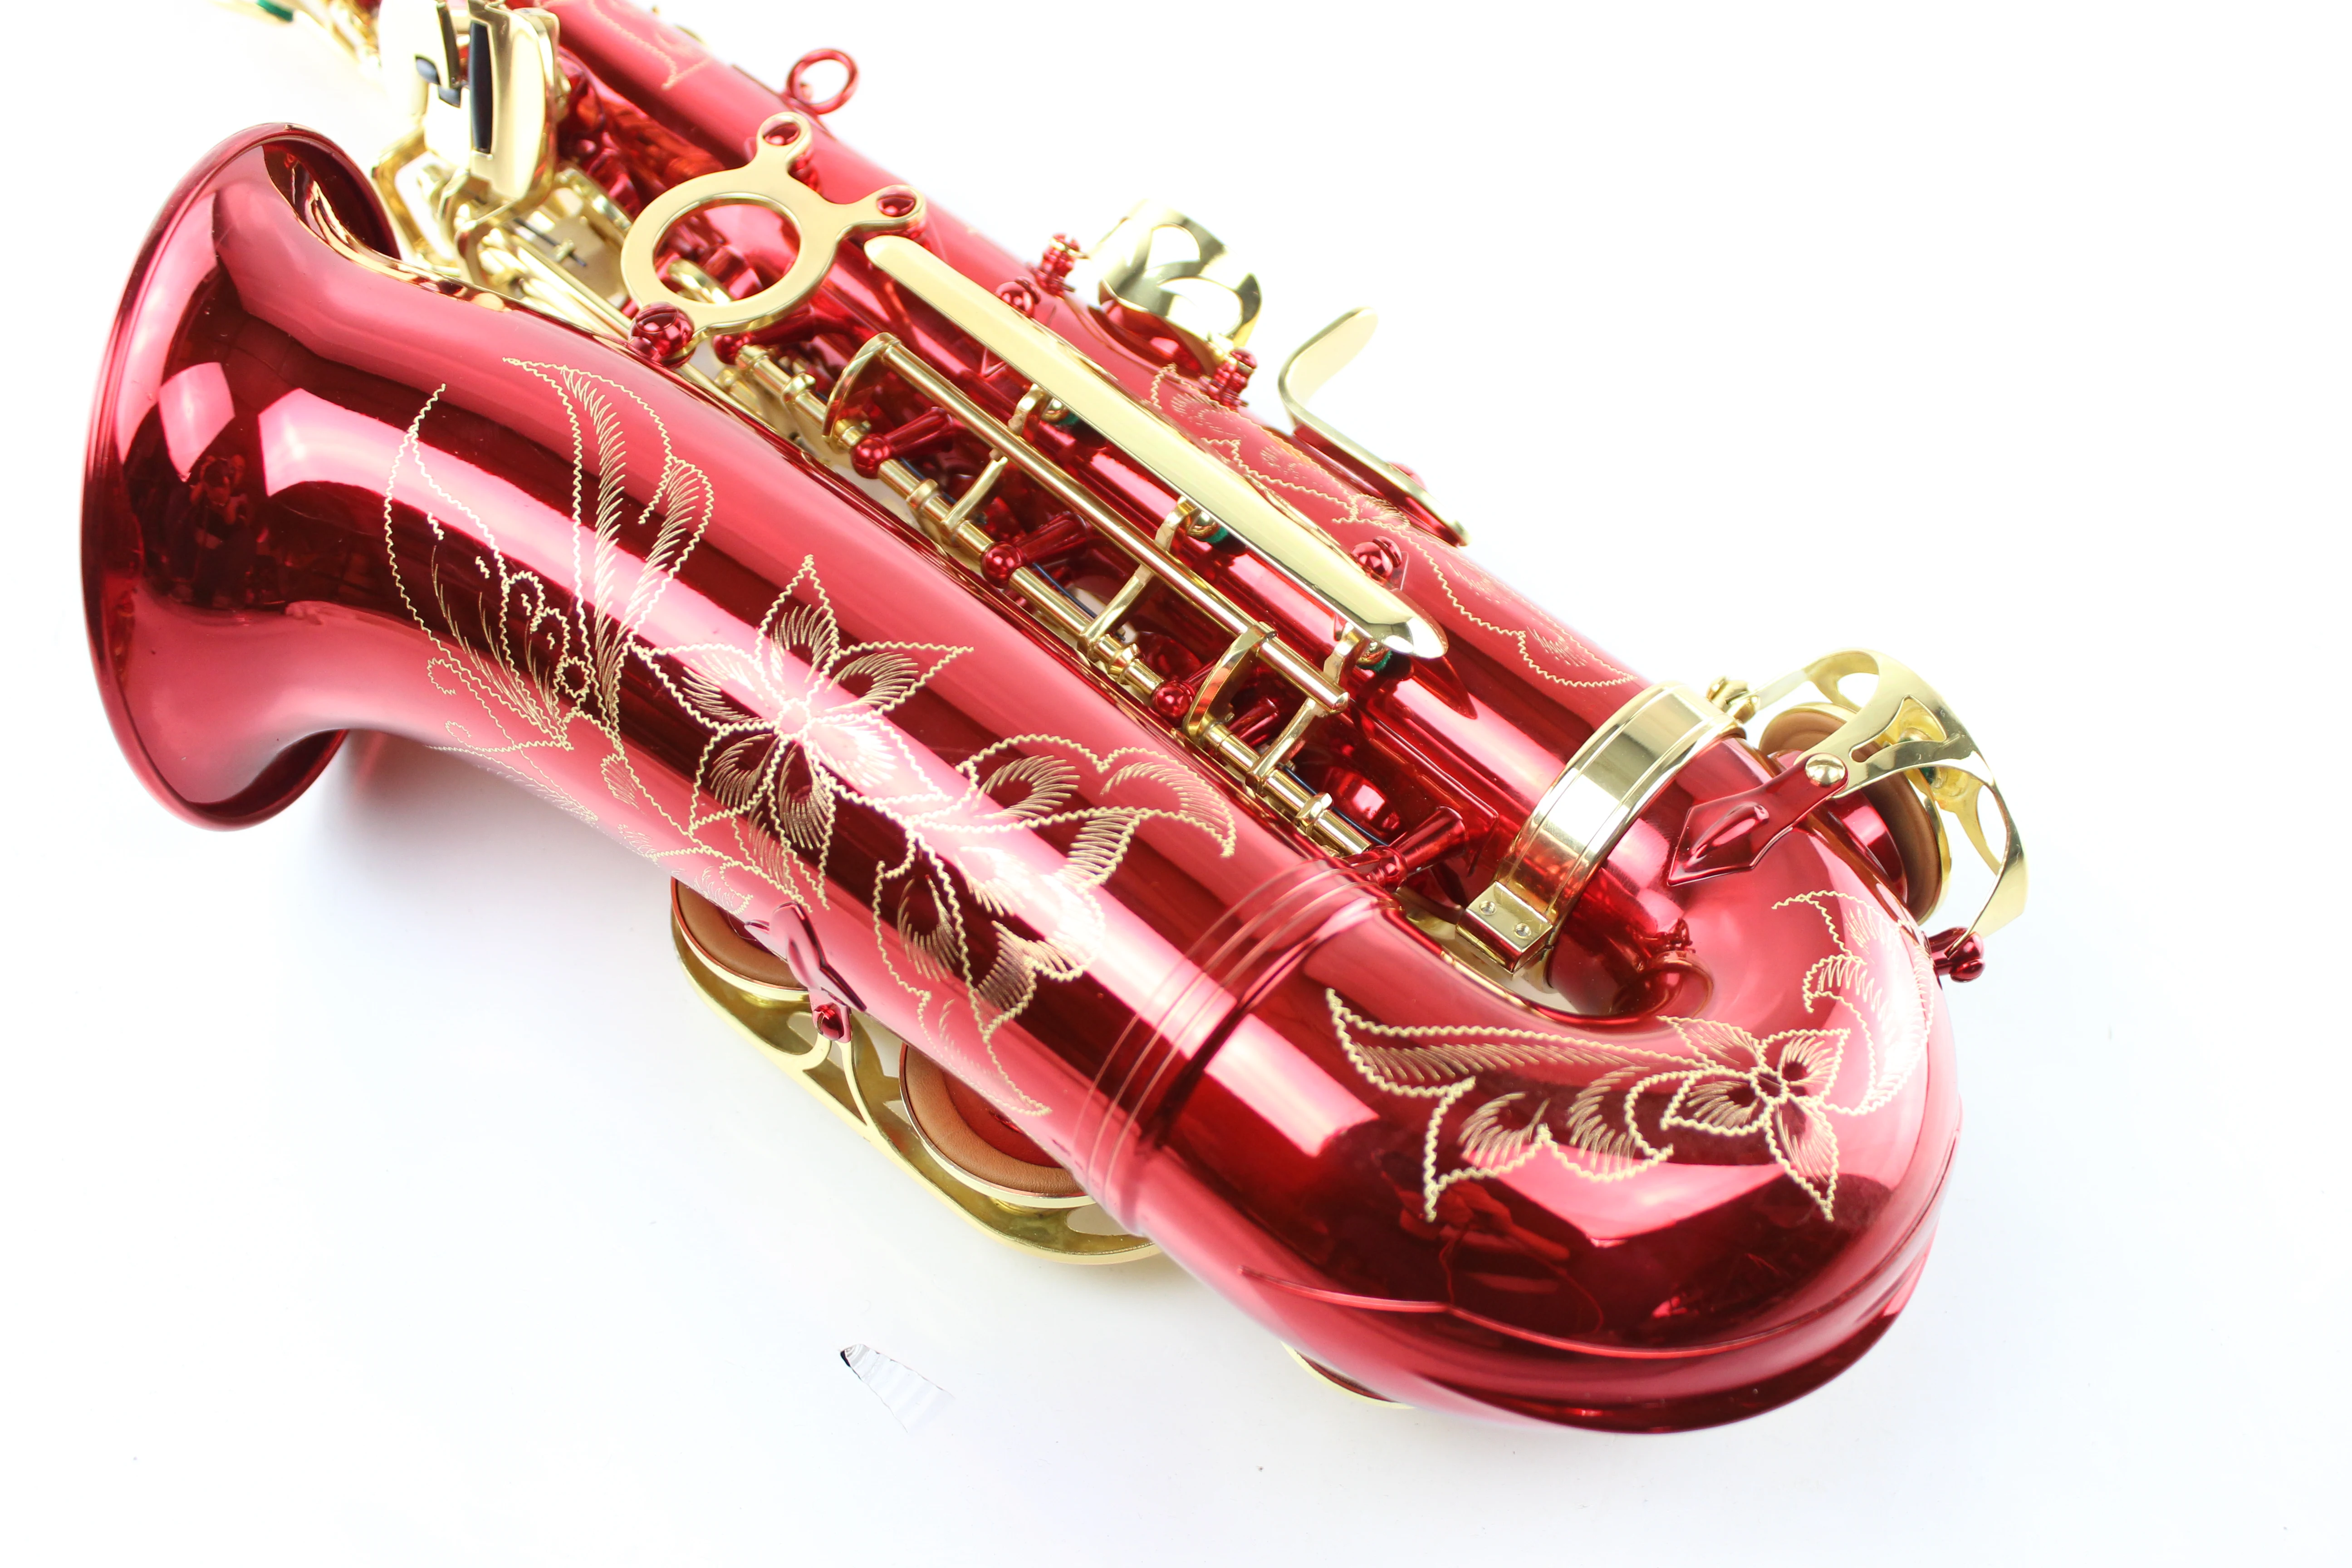 

MARGEWATE Eb Tune Alto Saxophone Bright Red Gold Lacquer E flat Alto Sax Musical Instrument with Nylon Box